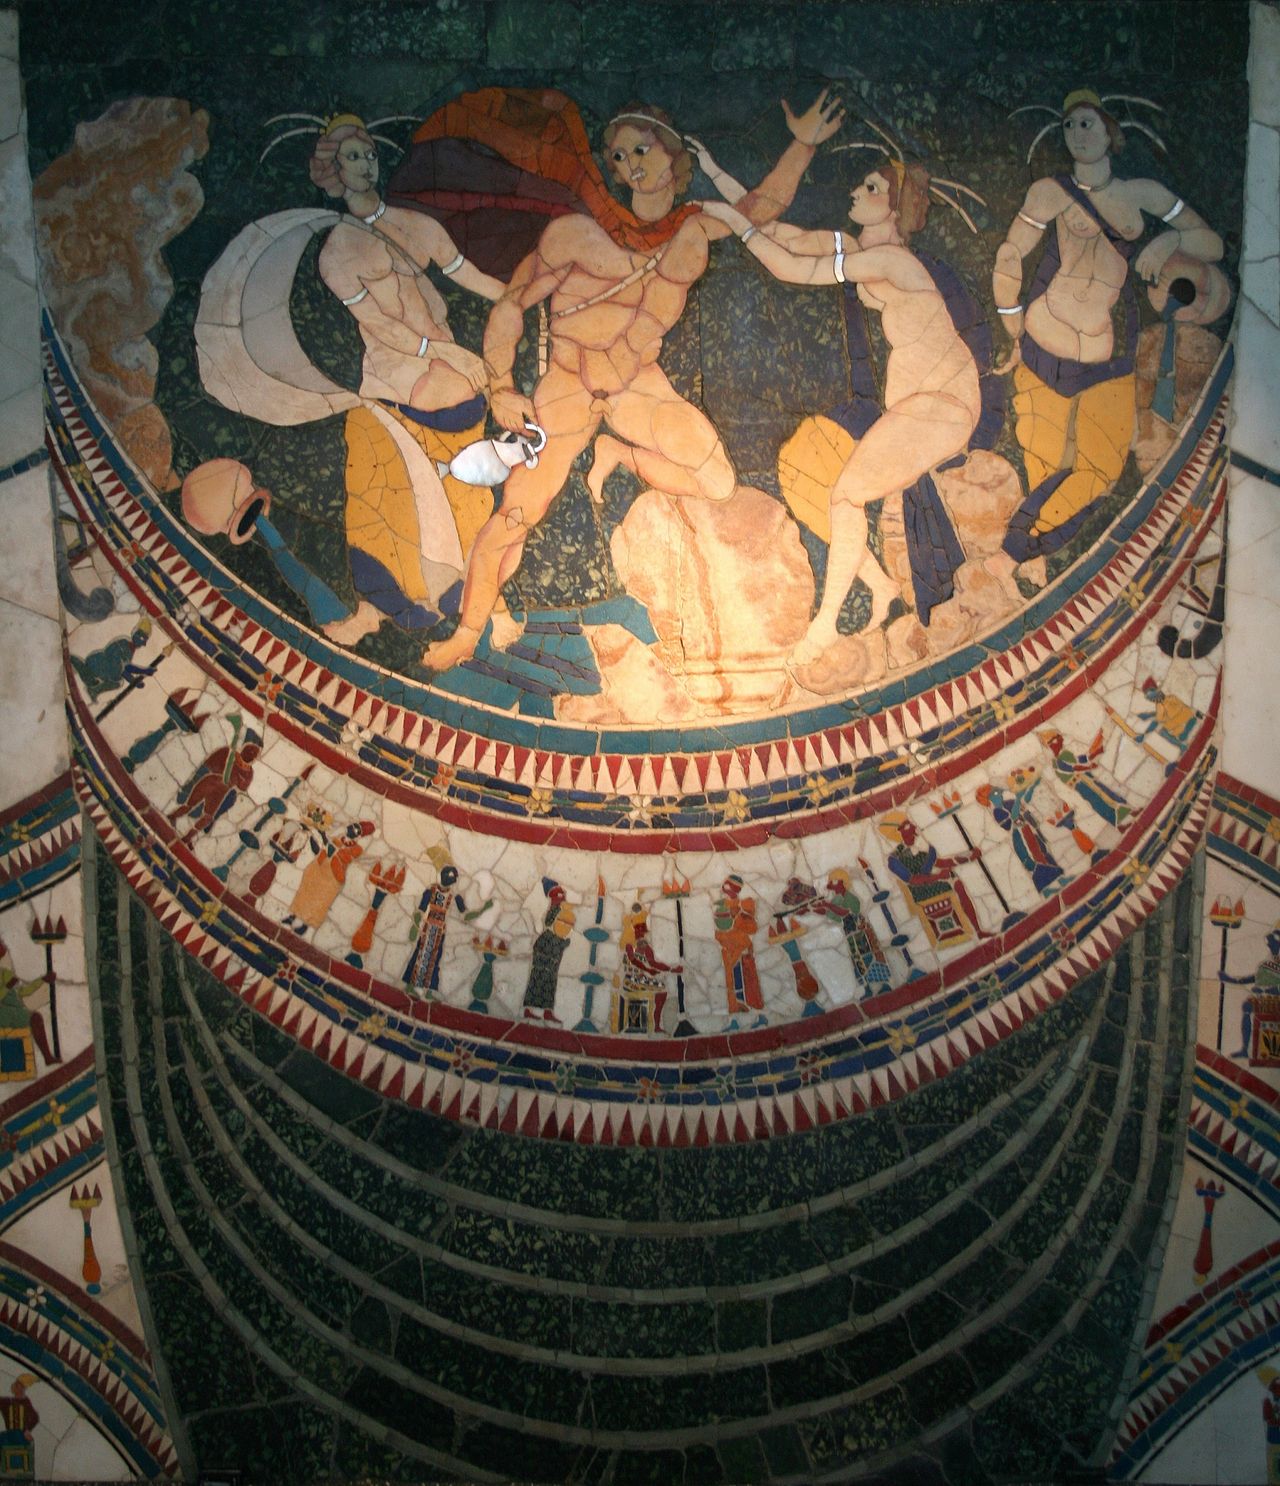 Εικ.6. Διακοσμητικός πίνακας προερχόμενος από την Βασιλική Junius Bassus με την τεχνική Opus Sectile, έργο από τεμάχια κροκεάτη λίθου. Εδώ ο Ύλας απαγάγεται από τις Νύμφες (Νεράϊδες) στη Μυσία, κατά την διάρκεια της Αργοναυτικής εκστρατείας. Eθνικό Αρχαιολογικό Μουσείο Palazzo Massimo - Ρώμη, Ιταλία. 